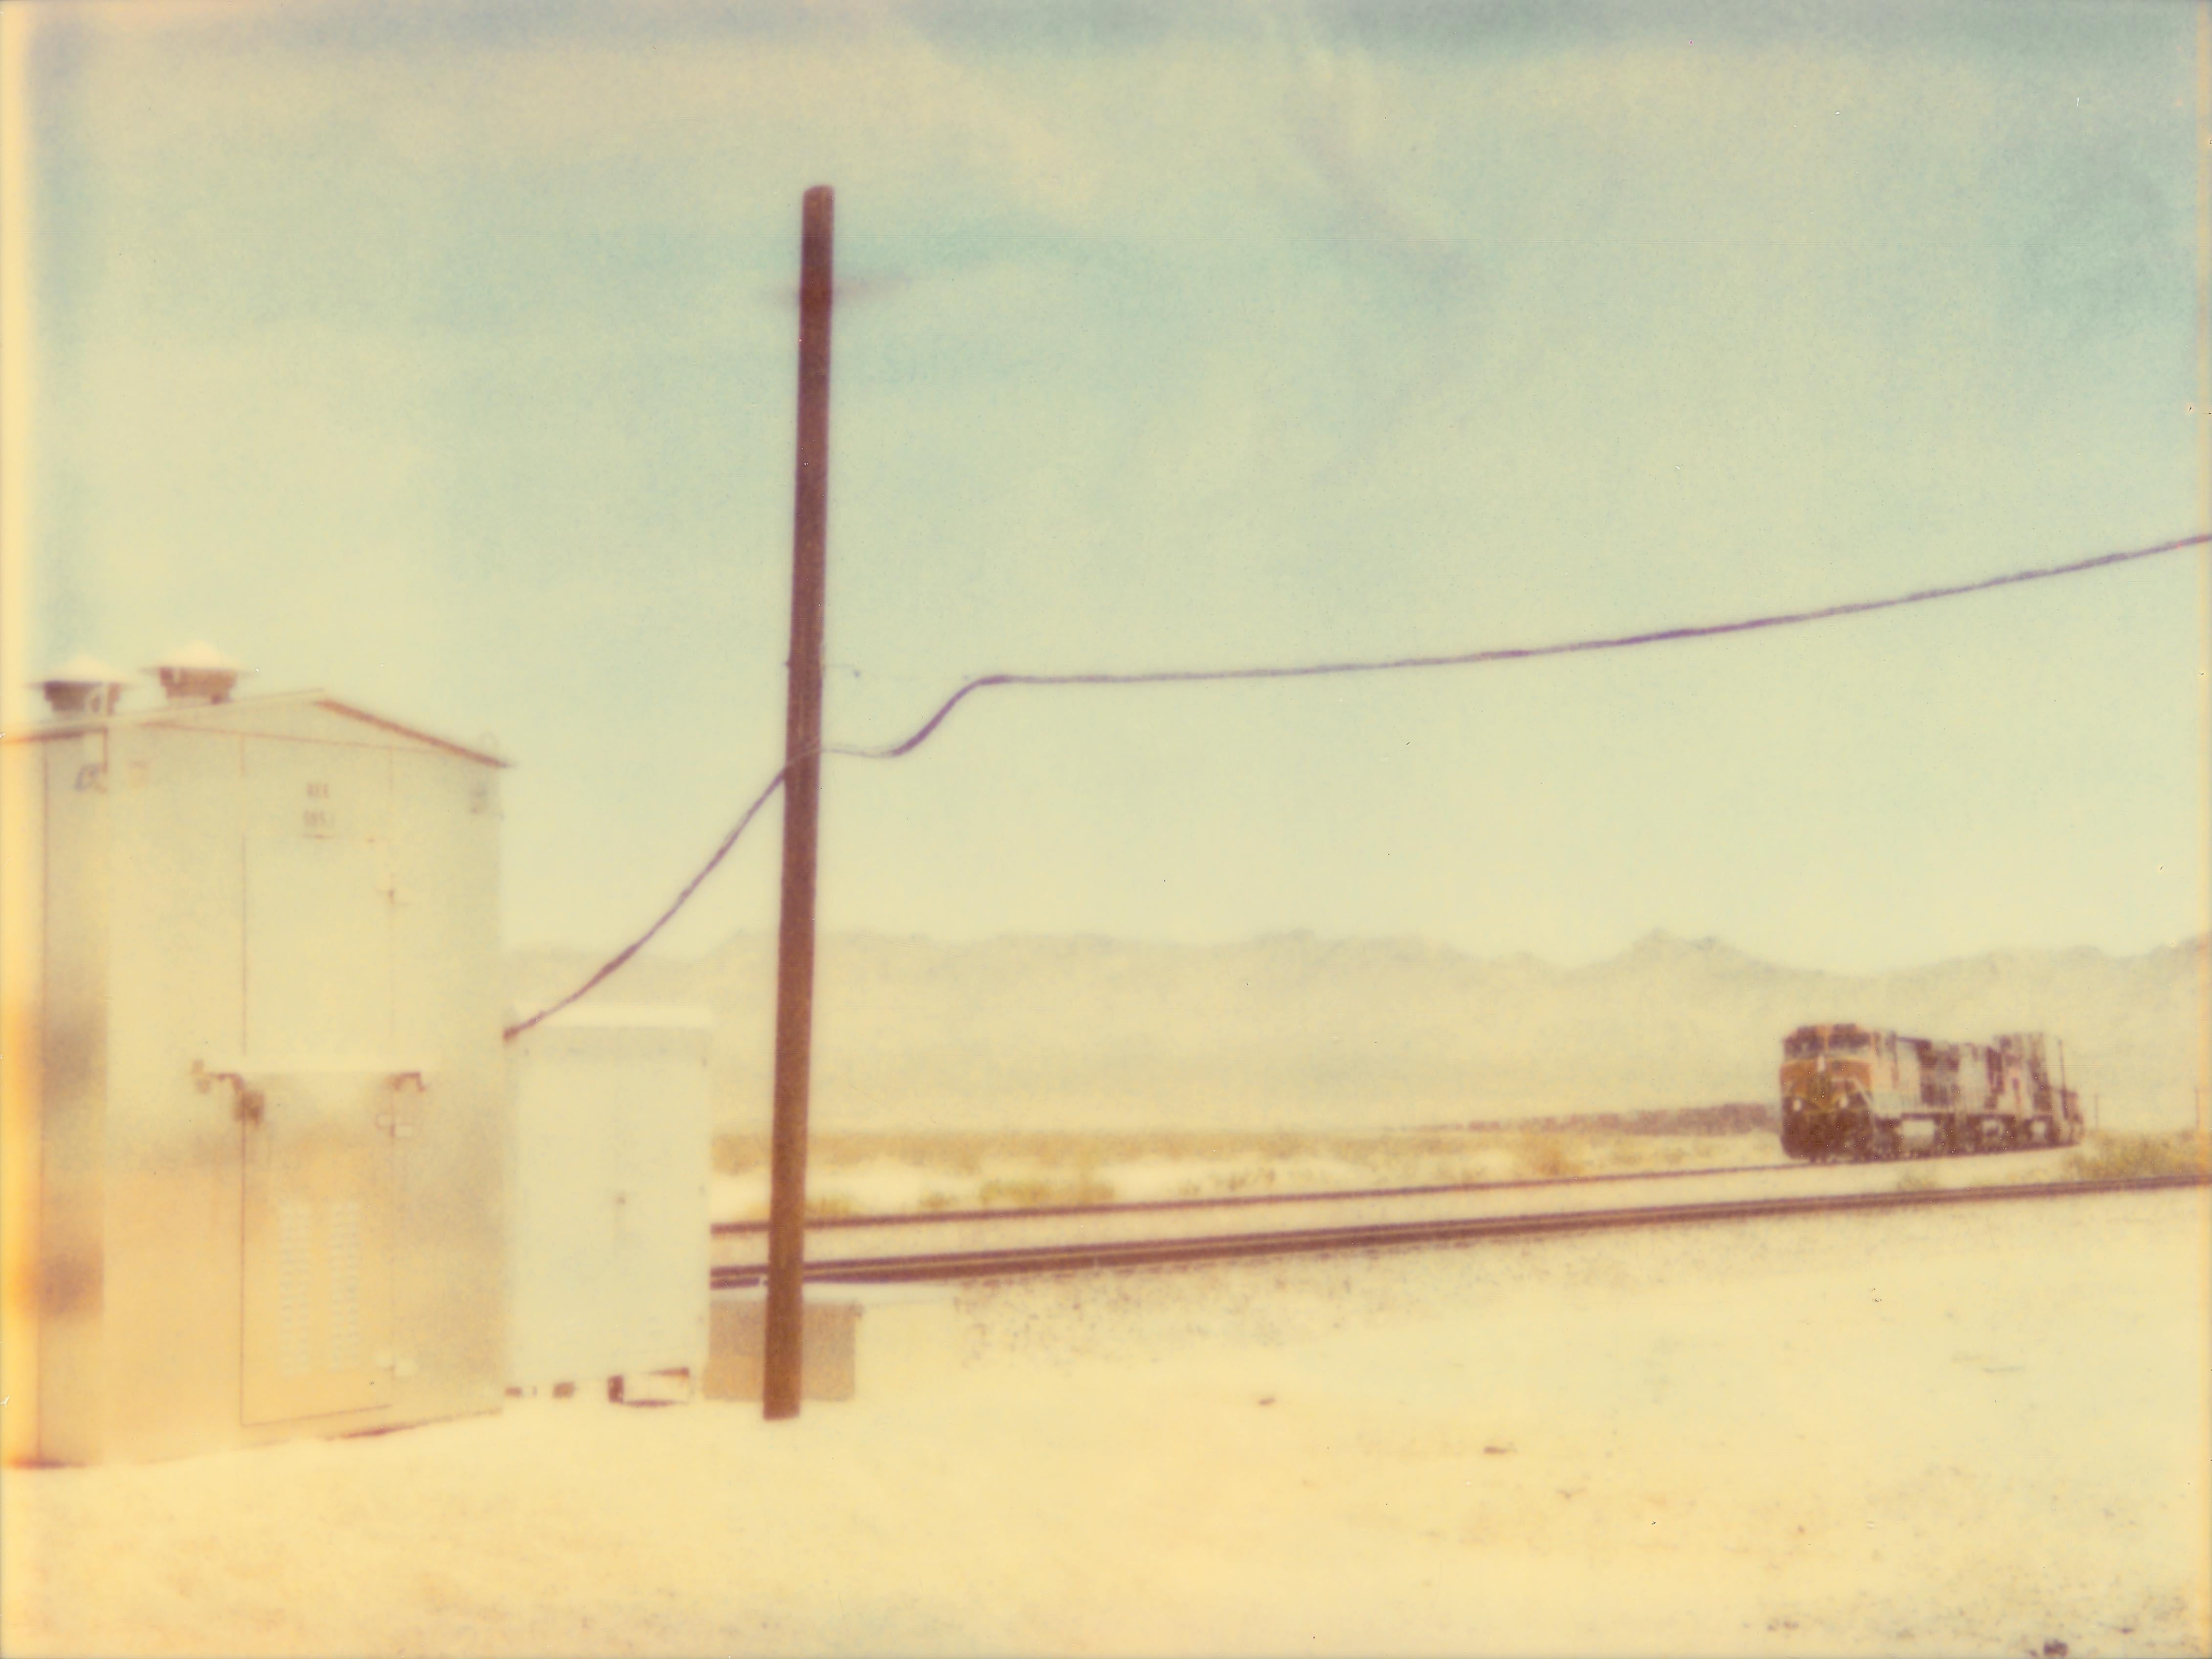 Landscape Photograph Stefanie Schneider - Train en approche (Wastelands) - 43x59cm, analogique, Polaroid, Contemporary, color